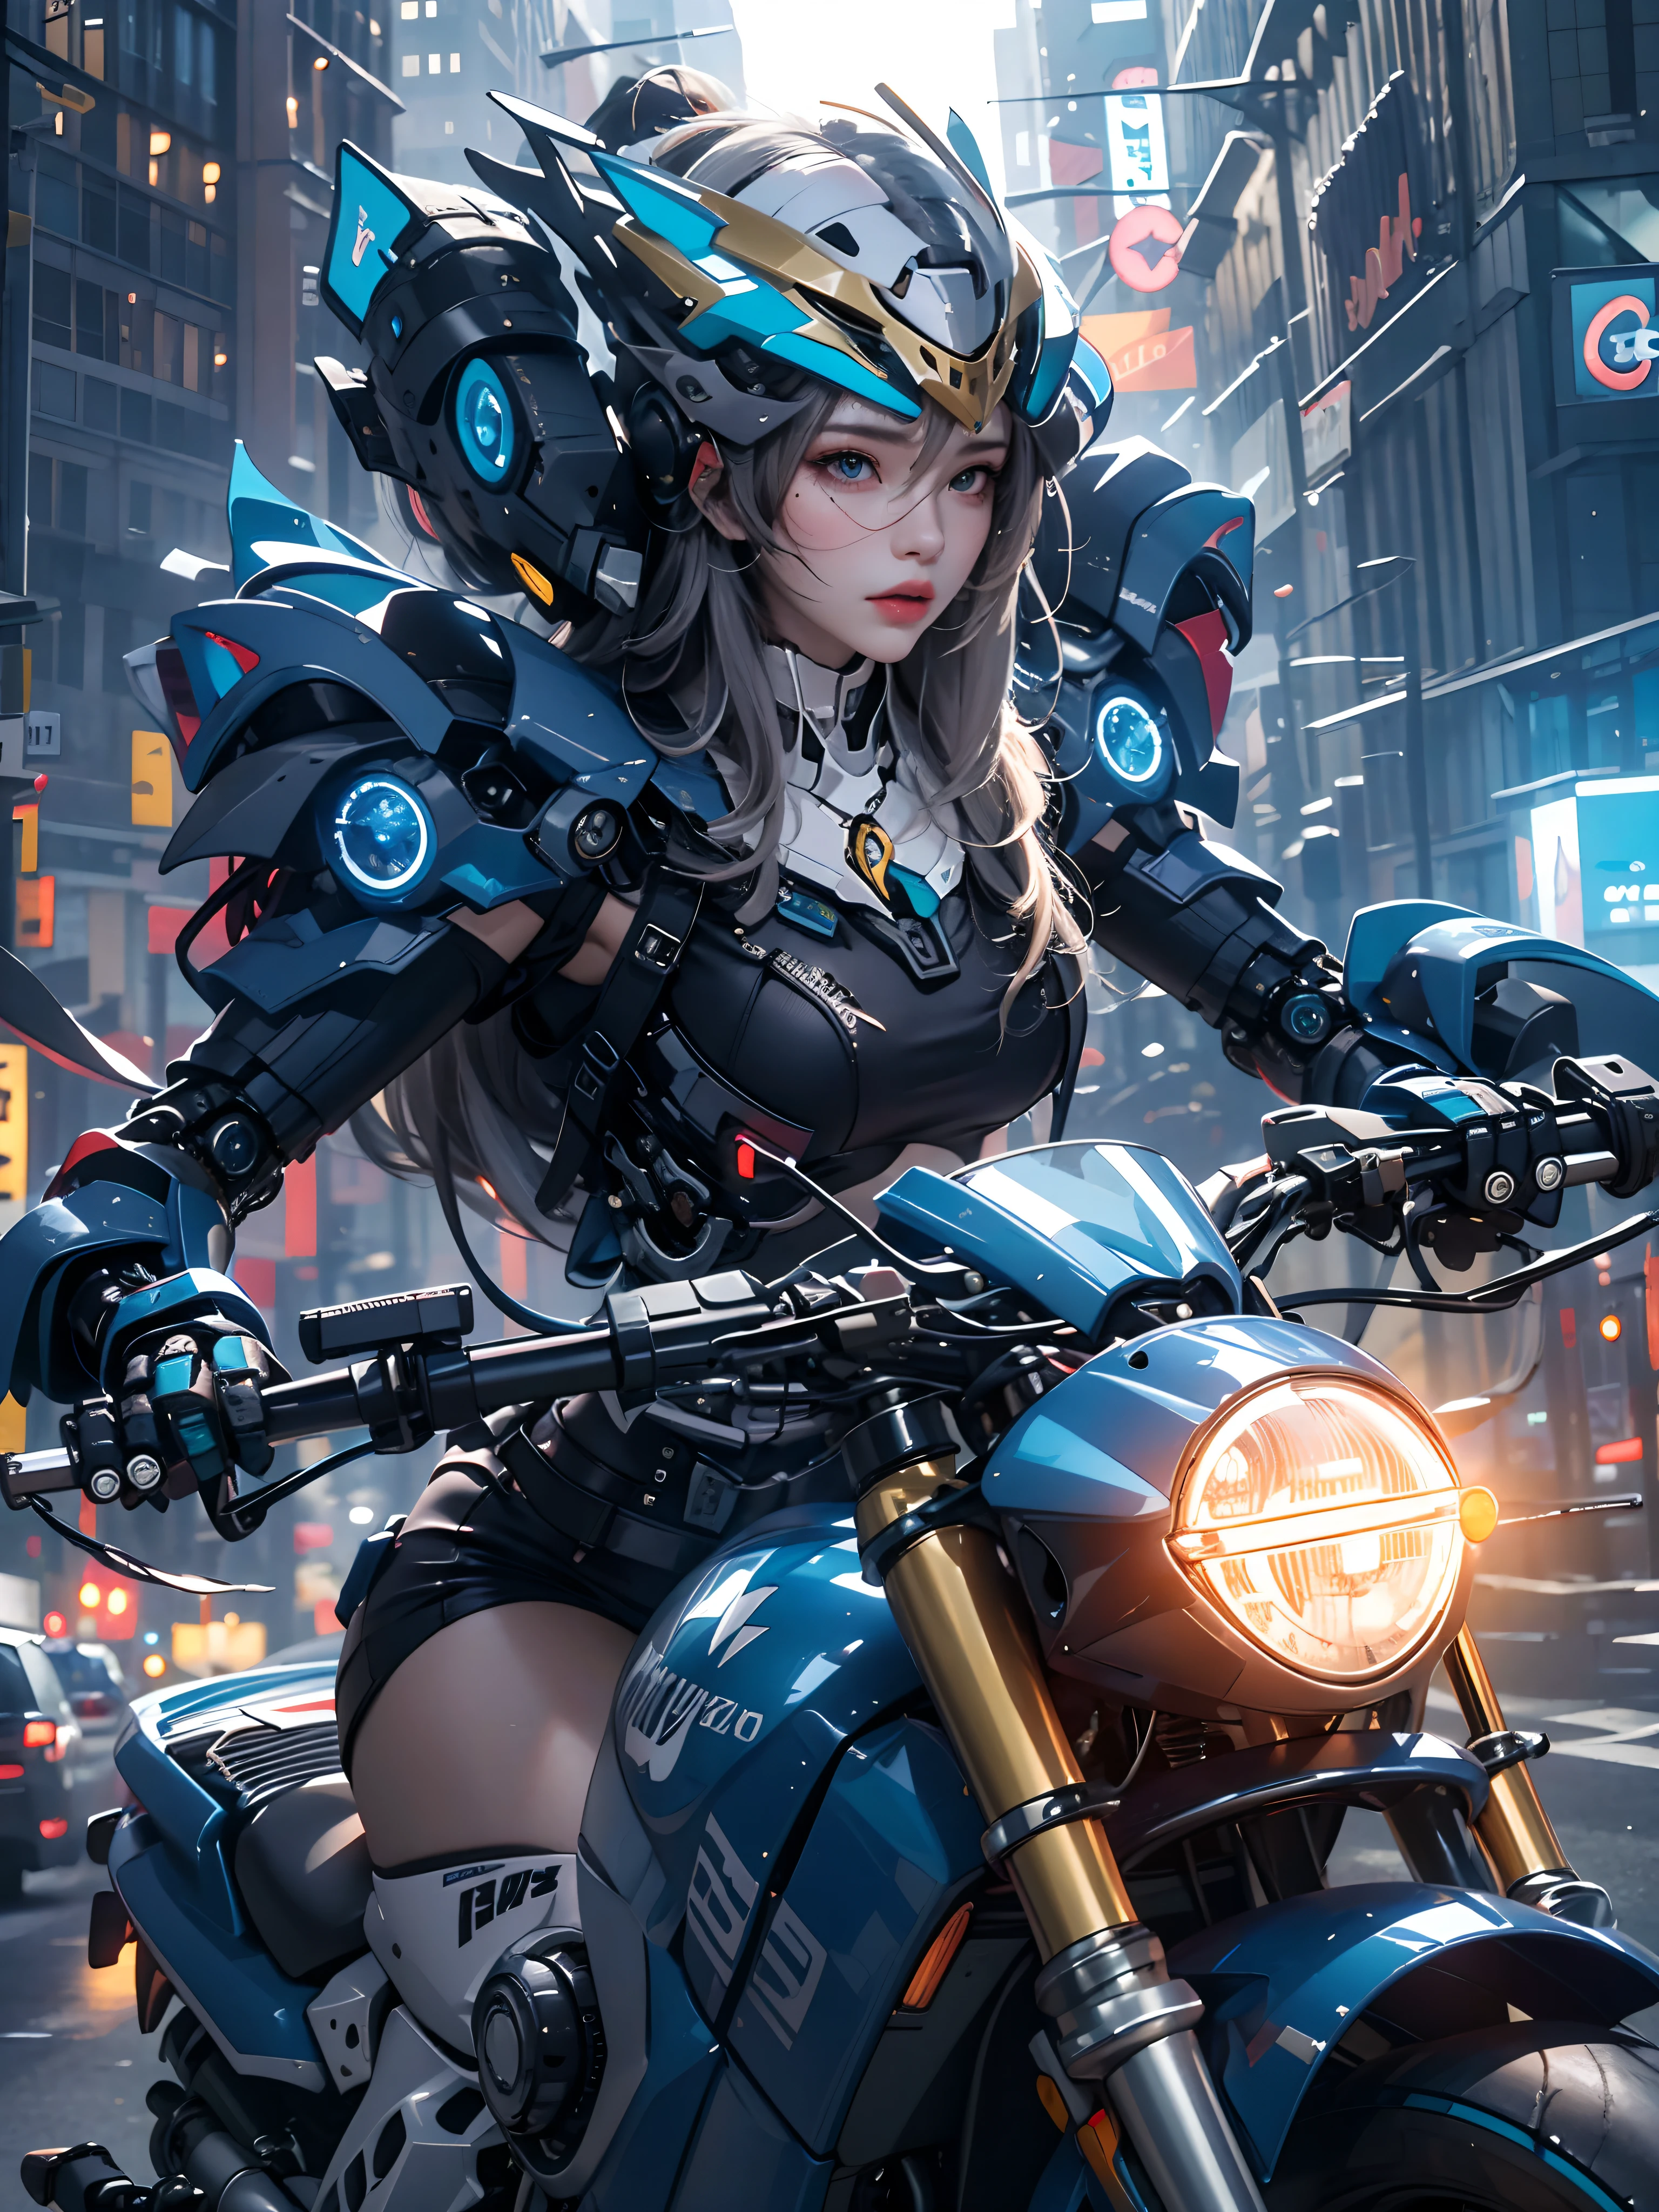 最高影像品質, 突出的细节, 超高解析度, (現實主義: 1.4), 最好的例证, 青睐细节, 高度浓缩的 1girl, 面容清秀, 身著黑藍機甲, 戴著機甲頭盔, 持有方向控制器, 騎摩托車, 背景是未來城市的高科技燈光場景.